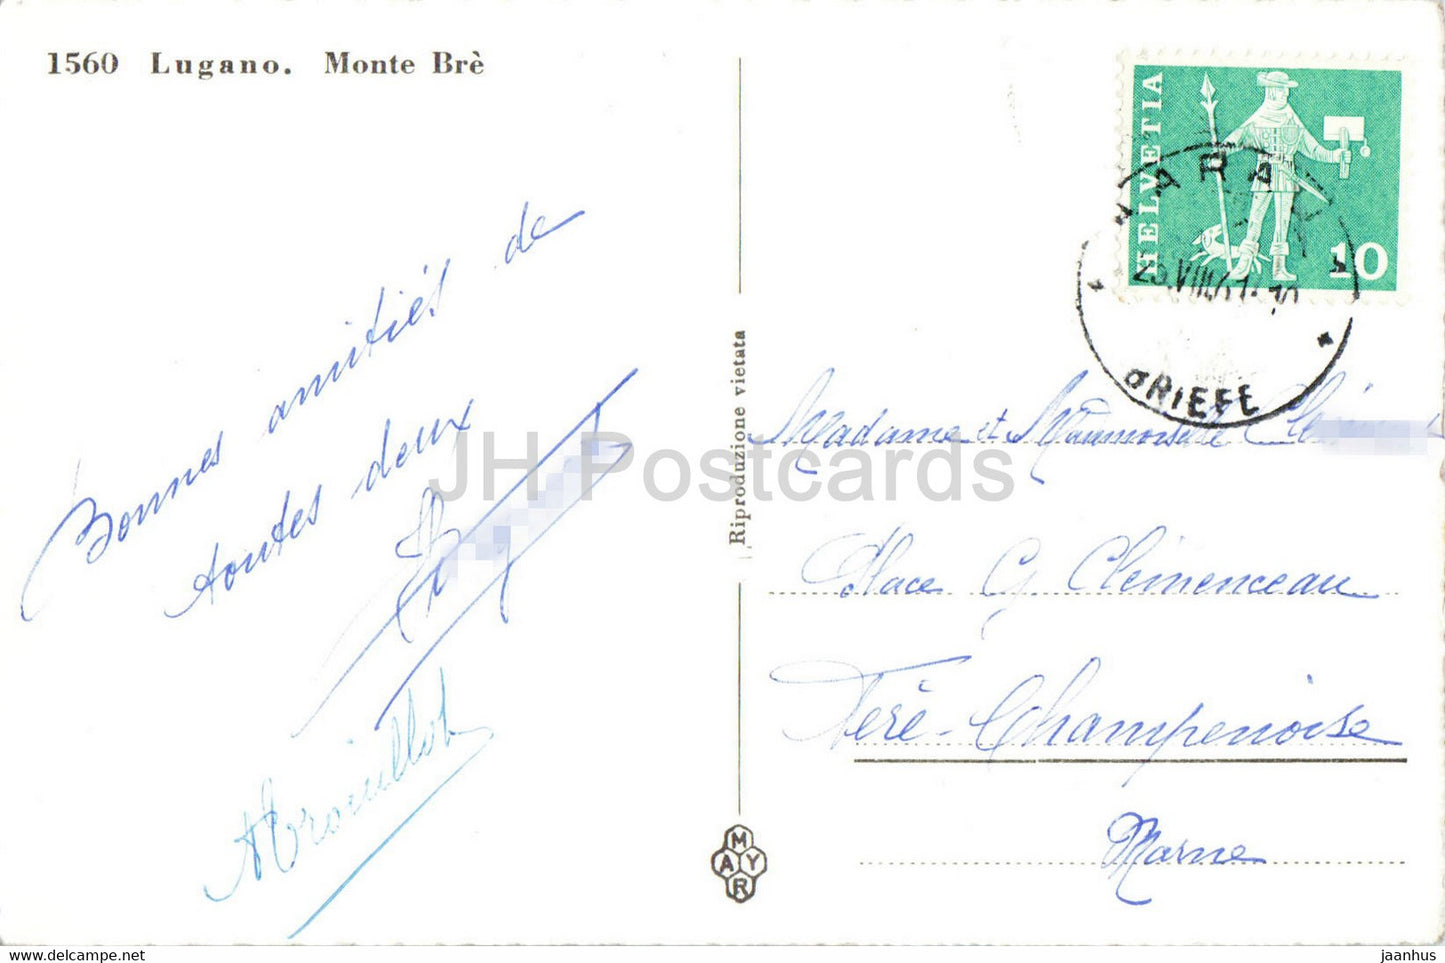 Lugano - Monte Bre - 1560 - alte Postkarte - 1961 - Schweiz - gebraucht